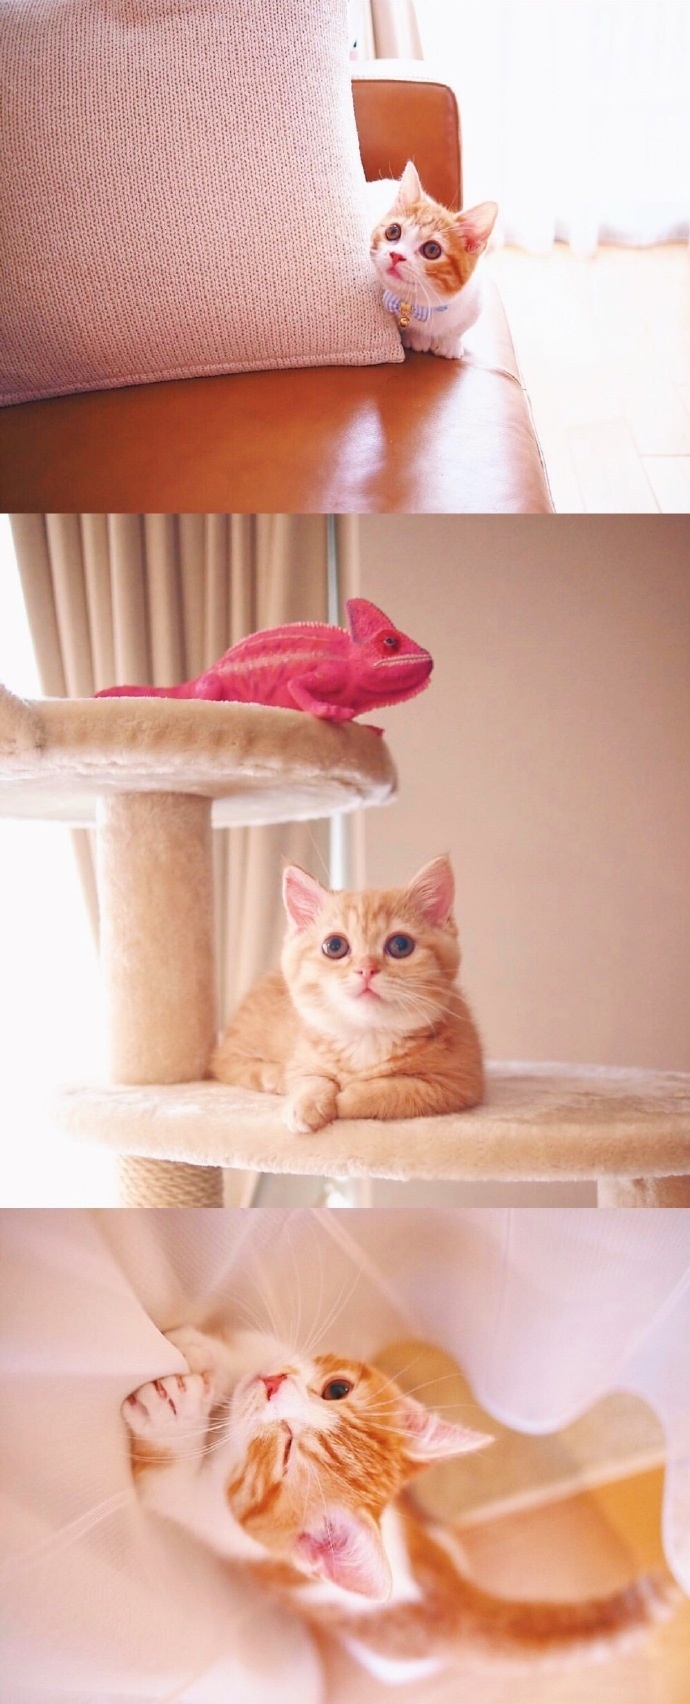 猫的图片可爱 很萌的橘猫图片